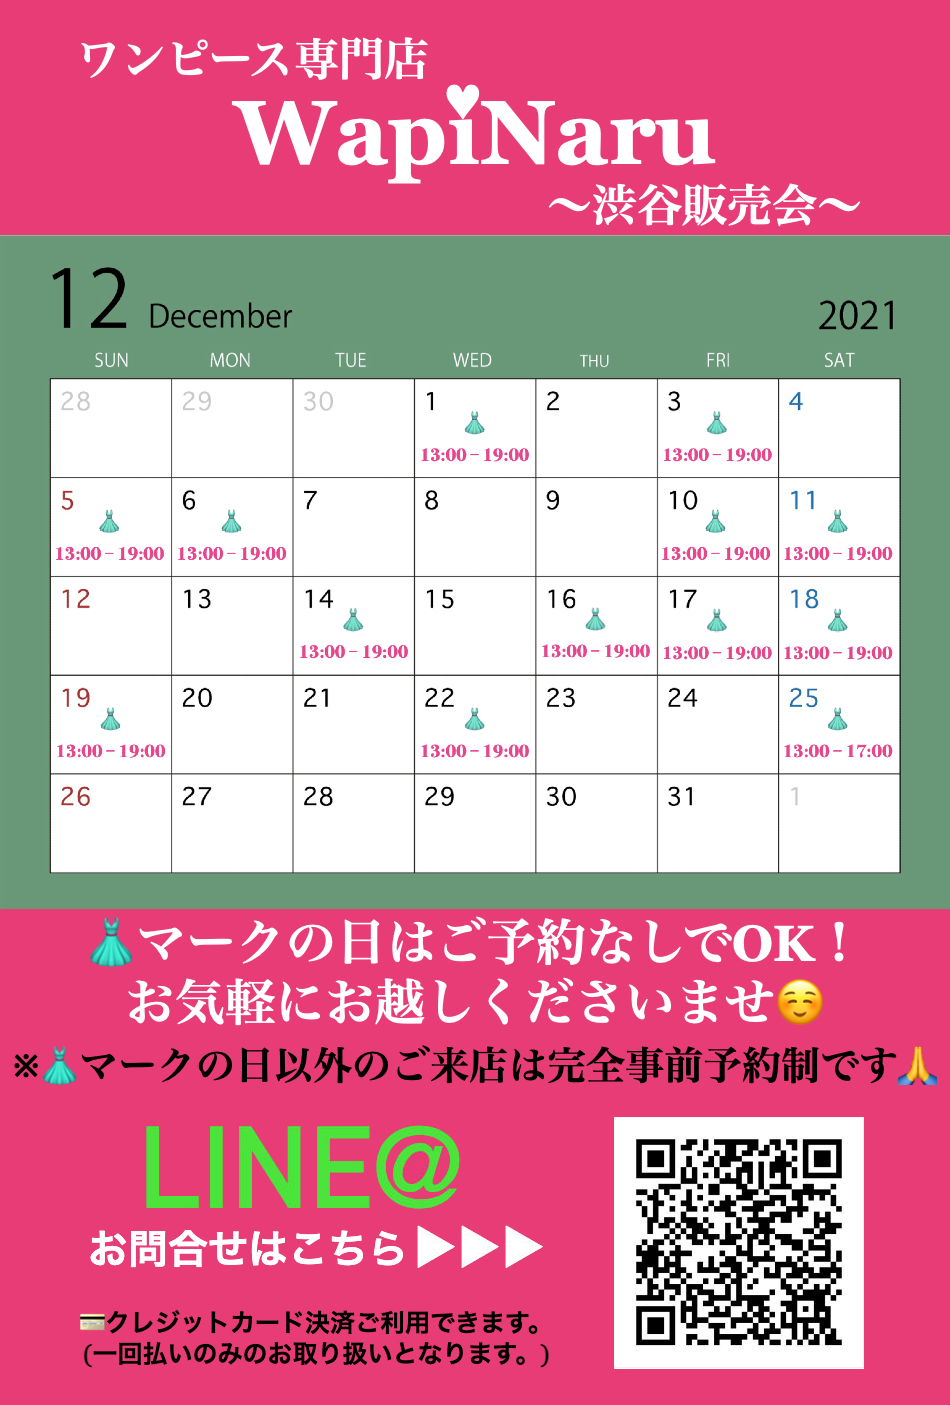 2021年12月 渋谷販売会